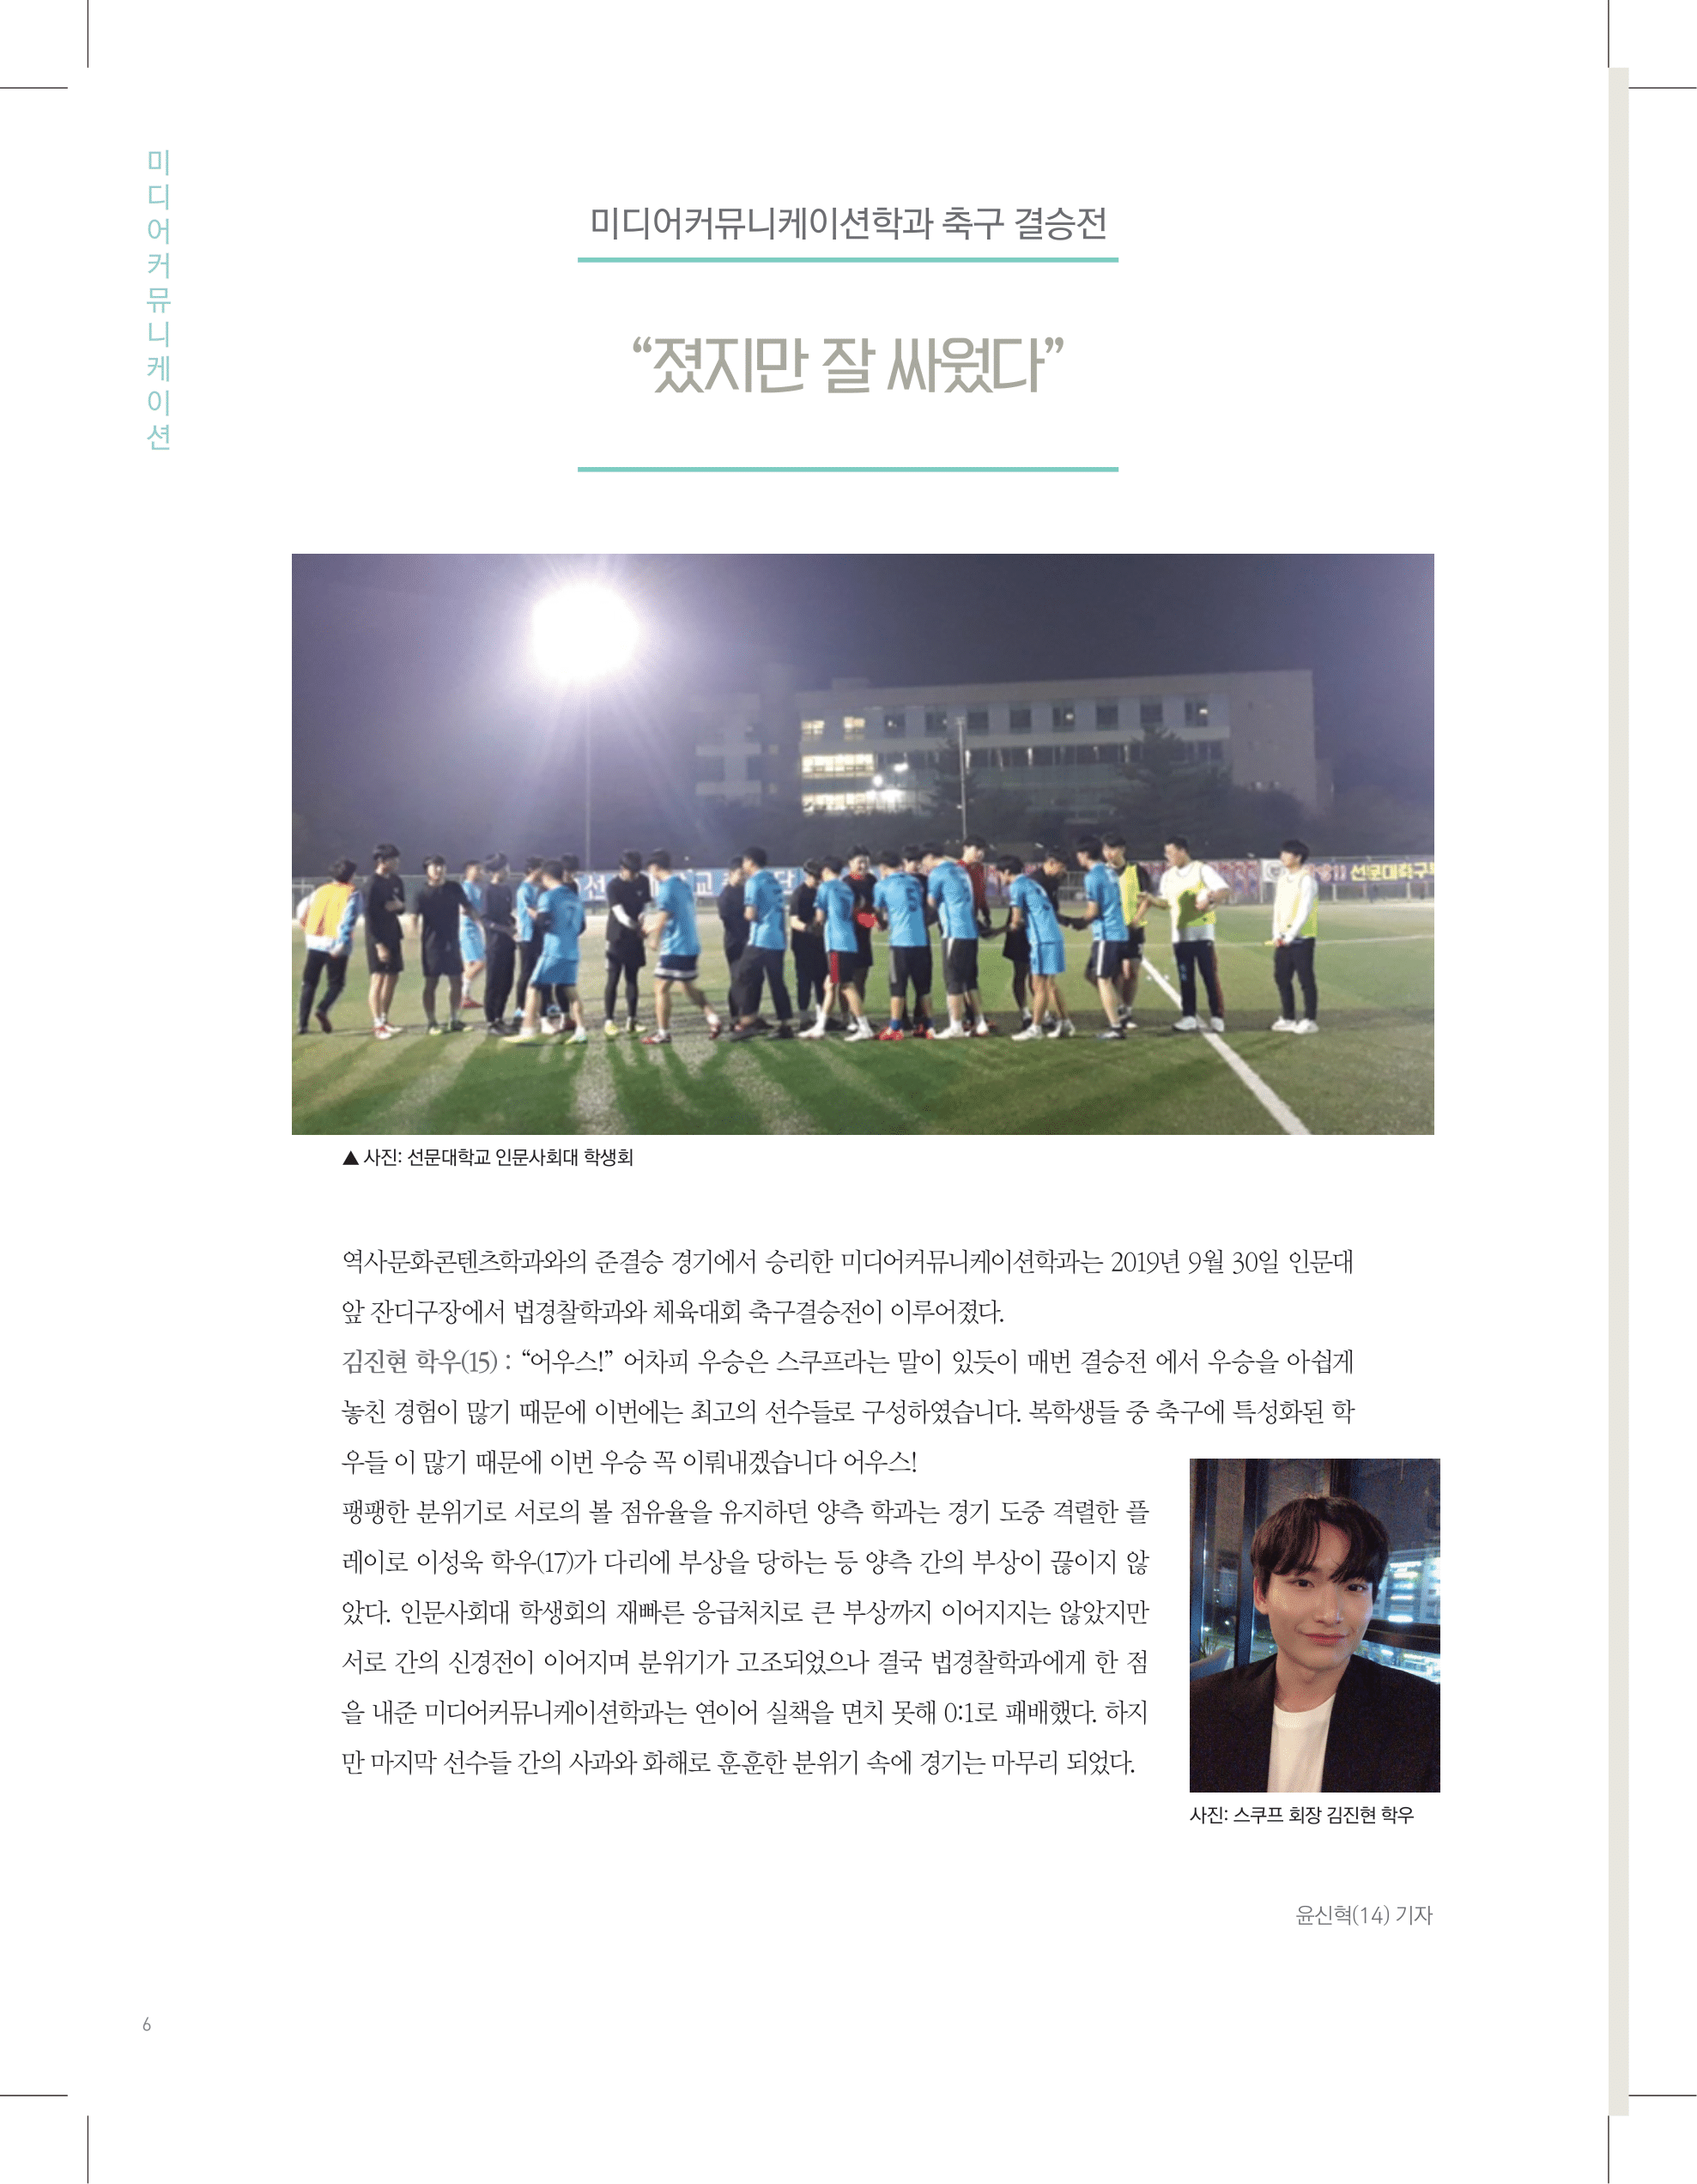 뜻새김 신문 74호 6